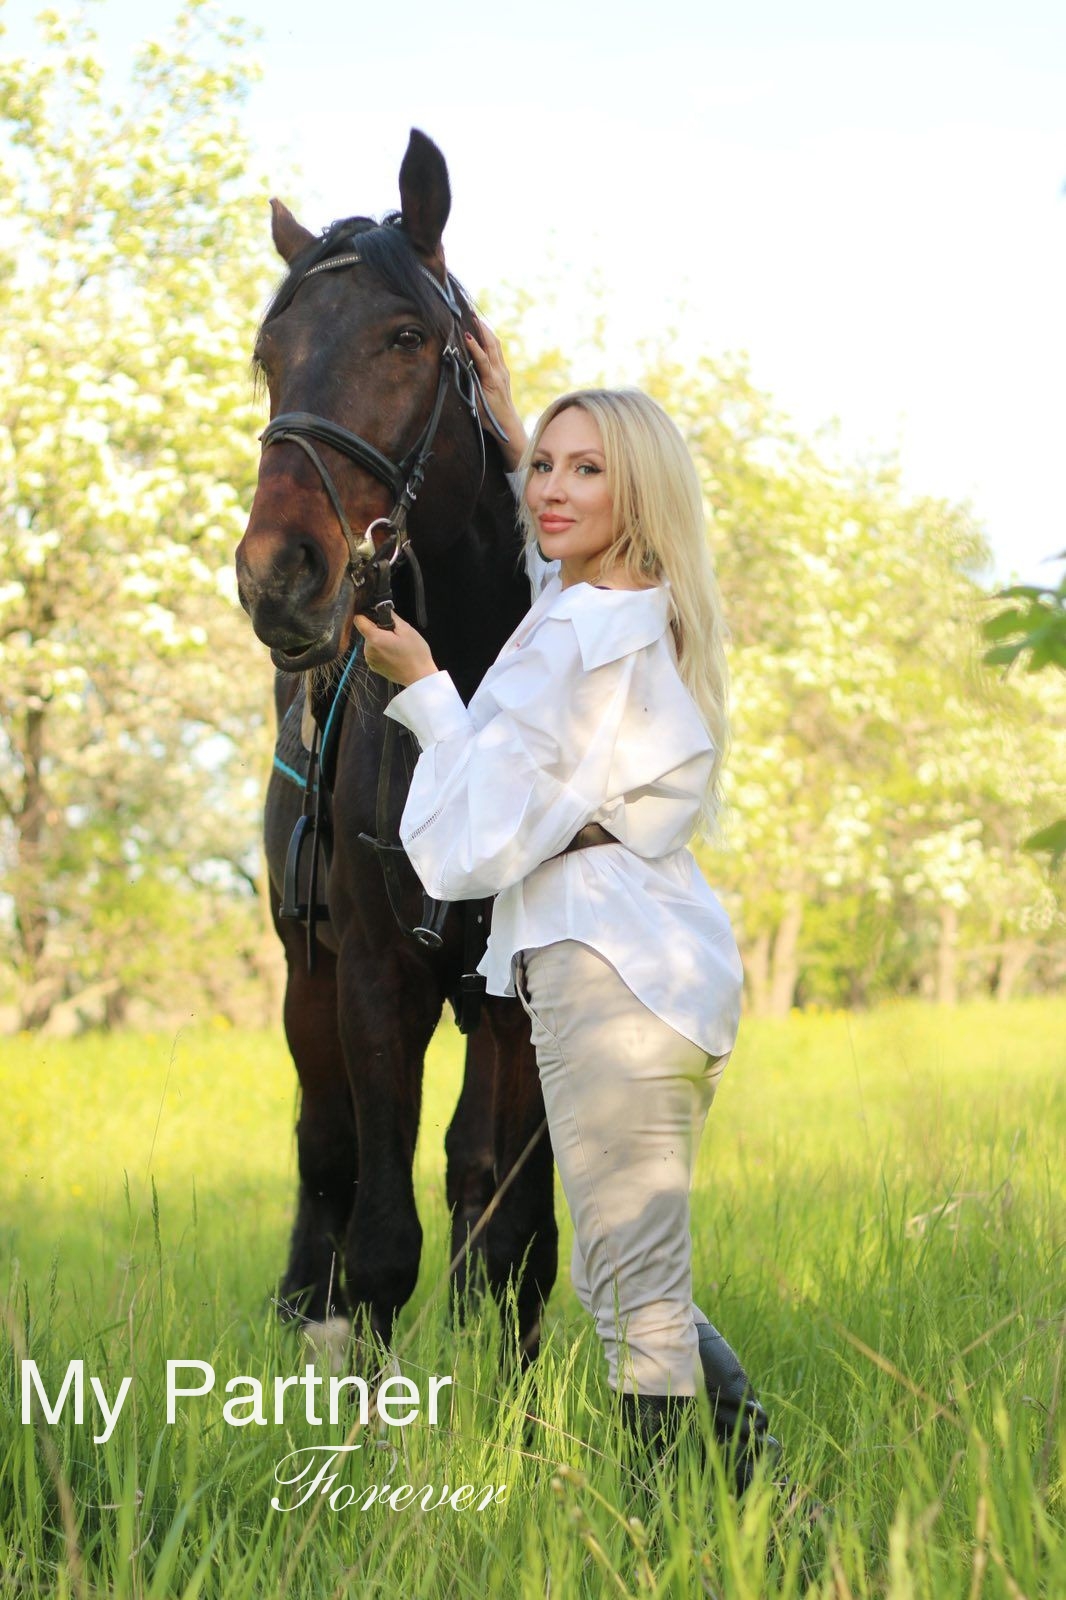 Dating Site to Meet Stunning Ukrainian Woman Olga from Zaporozhye, Ukraine